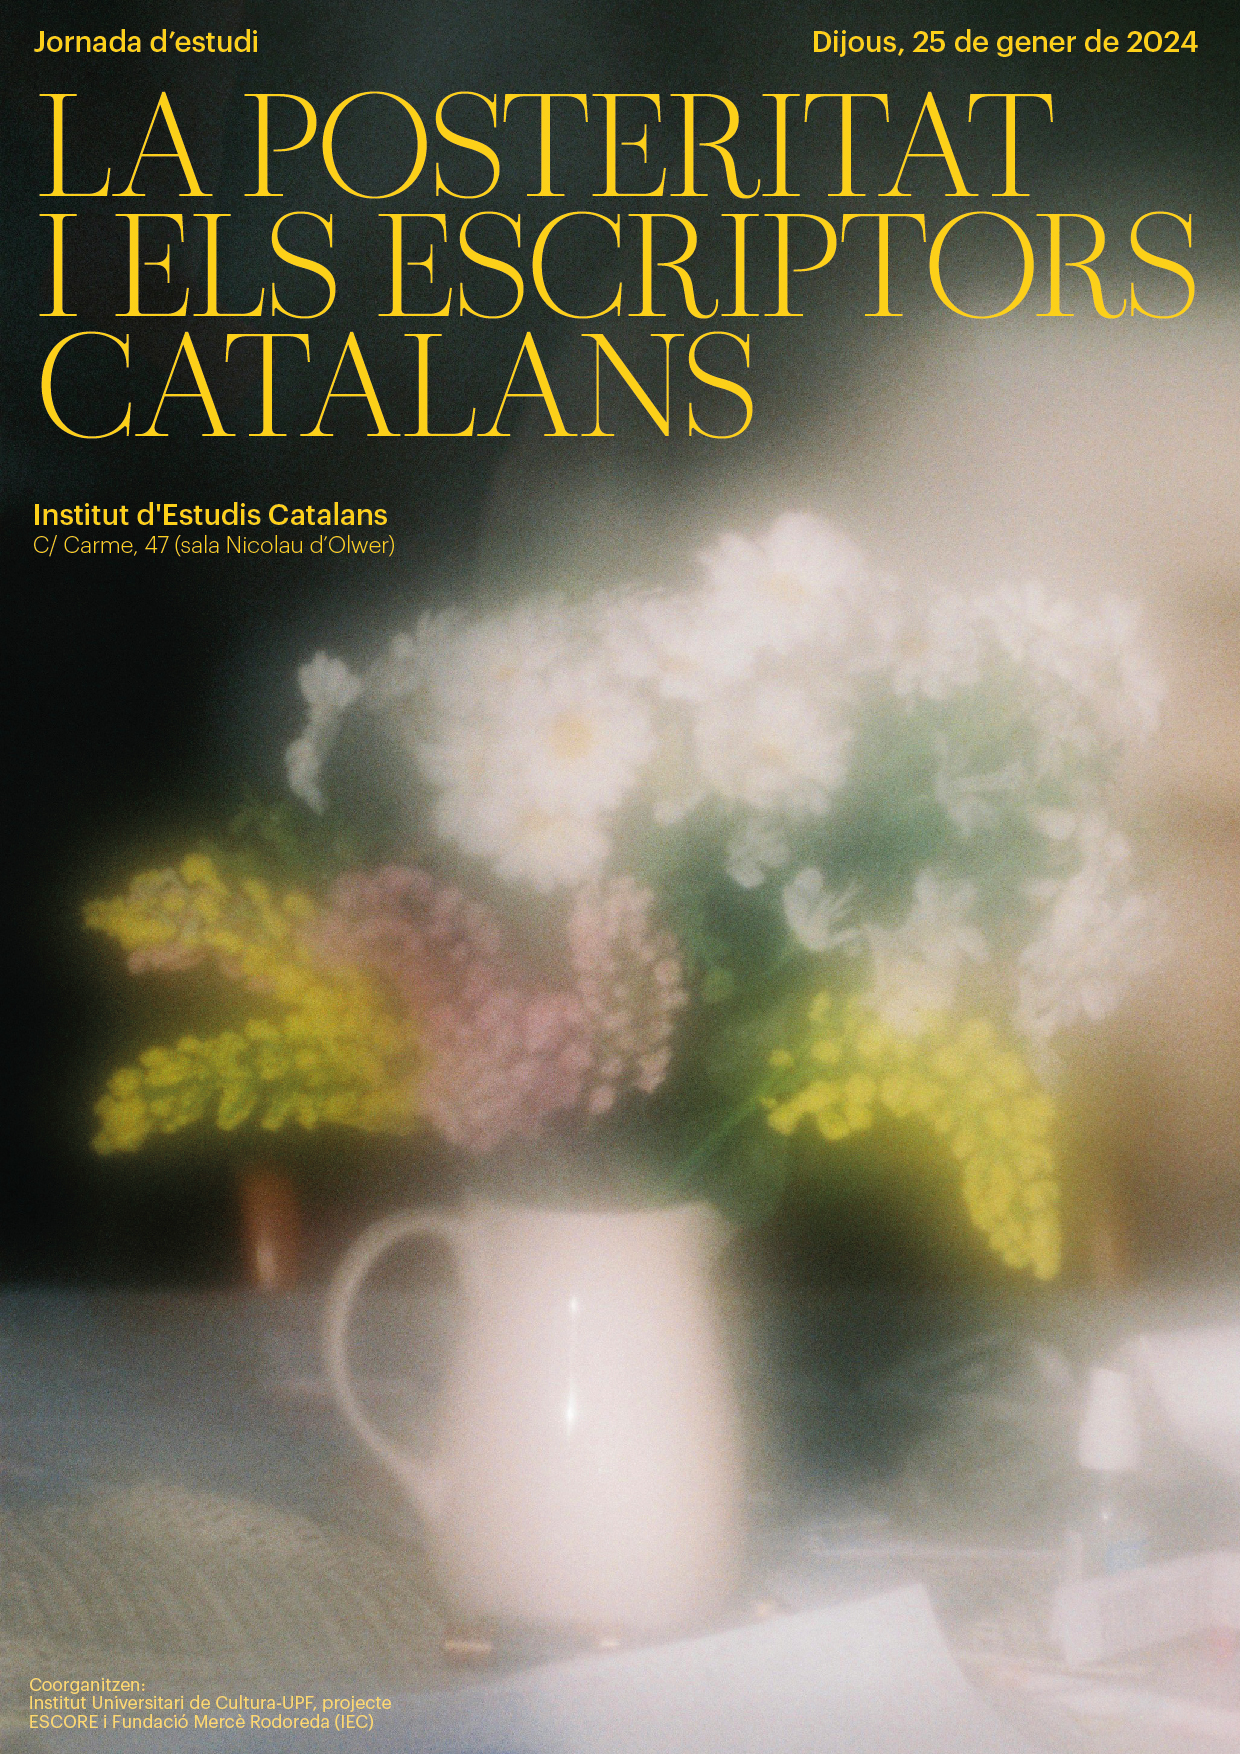 [JORNADA D'ESTUDI] La posteritat dels escriptors catalans 25 de gener de 2024 Institut d'Estudis Catalans